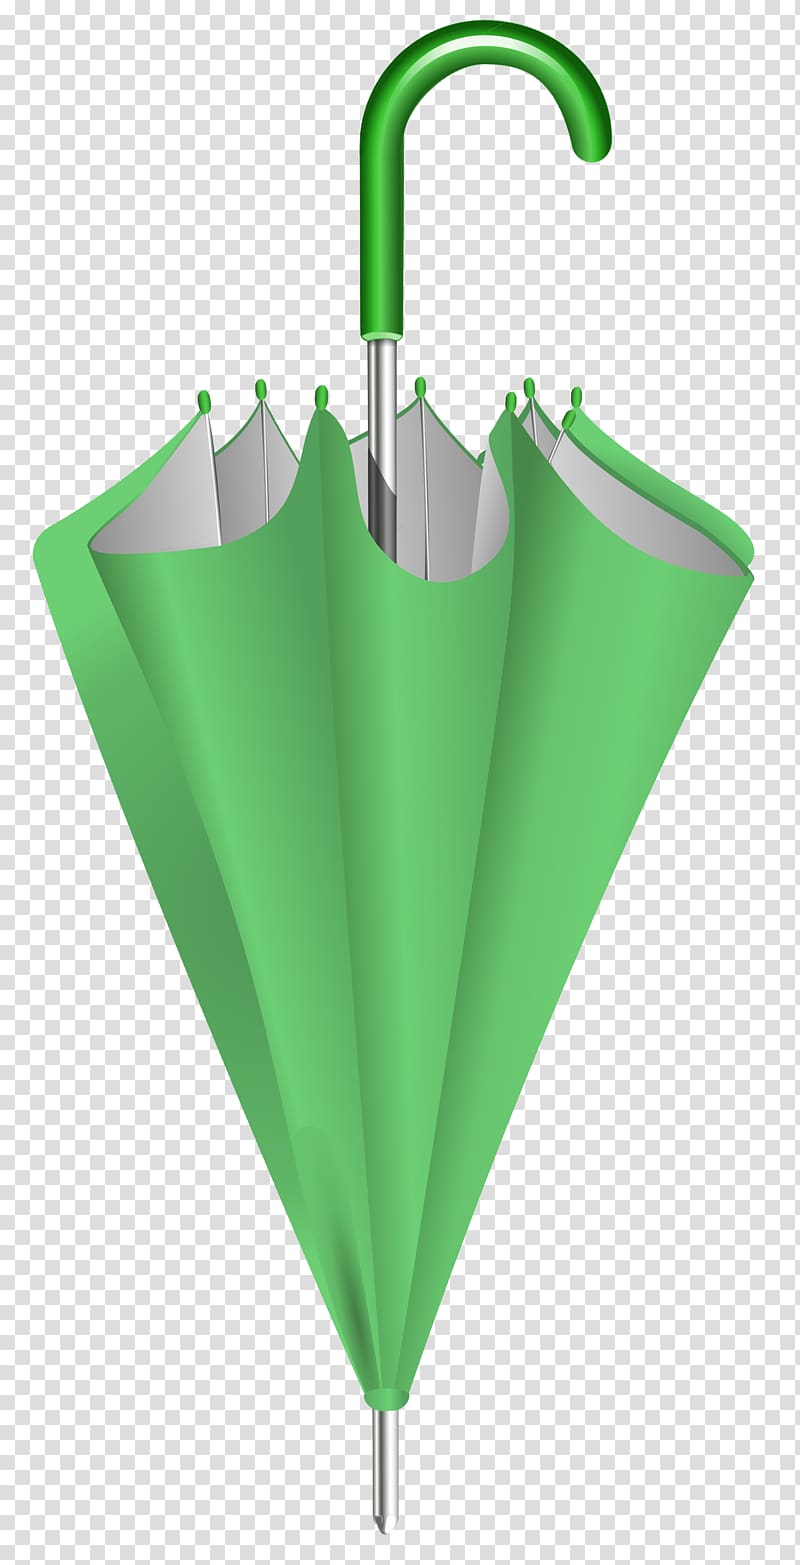 folded green and gray umbrella, Umbrella Blue , Green Closed Umbrella transparent background PNG clipart